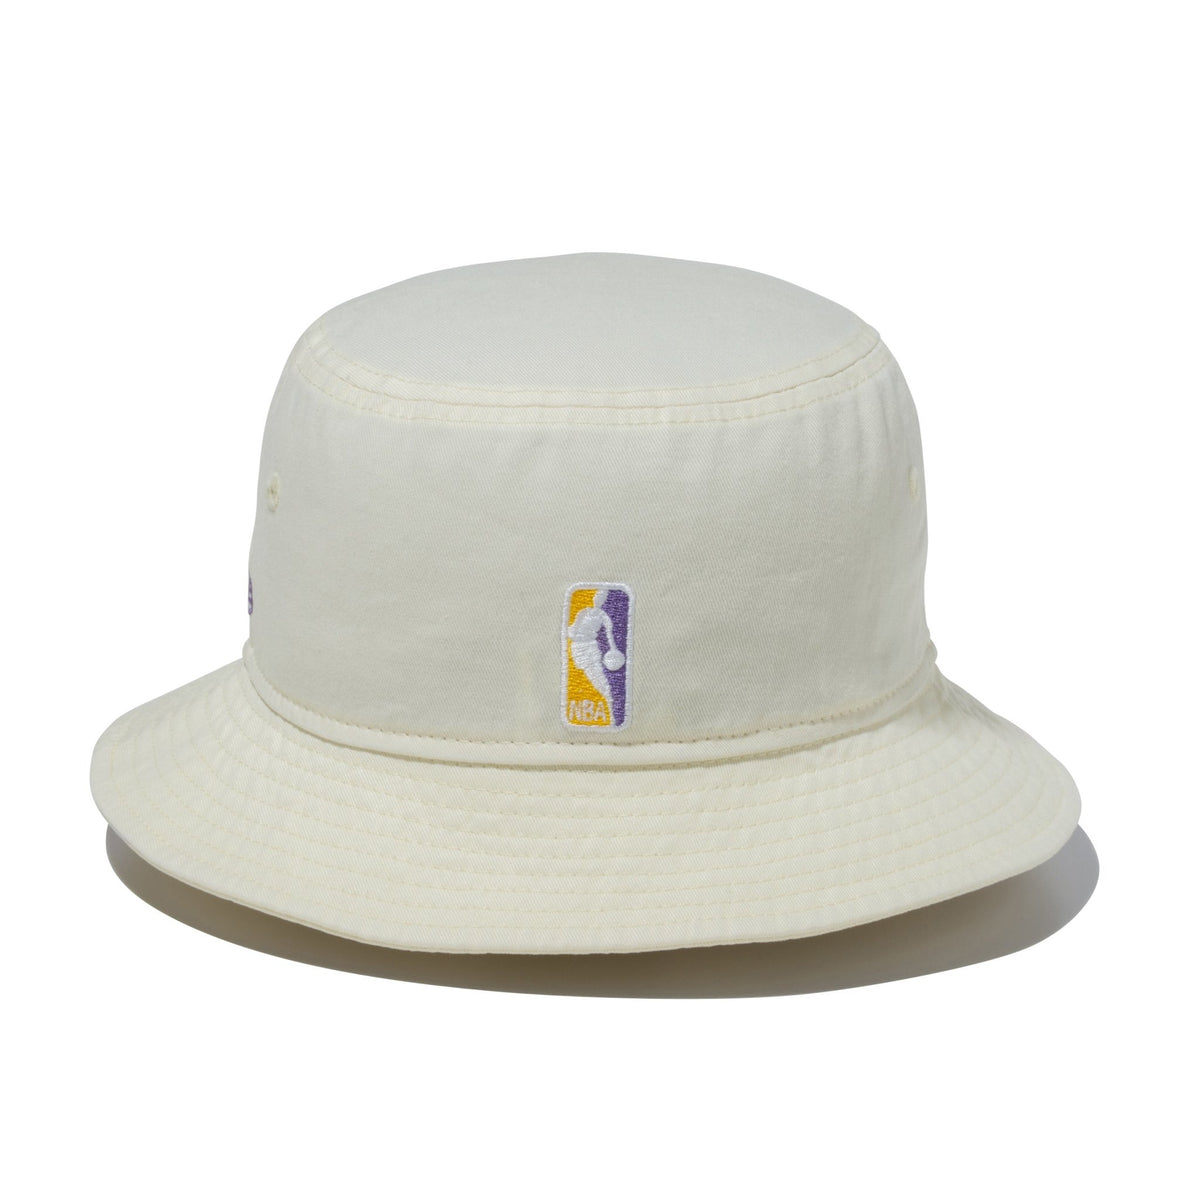 バケット01 NBA Bucket Hat ロサンゼルス・レイカーズ クロームホワイト ニューエラオンラインストア